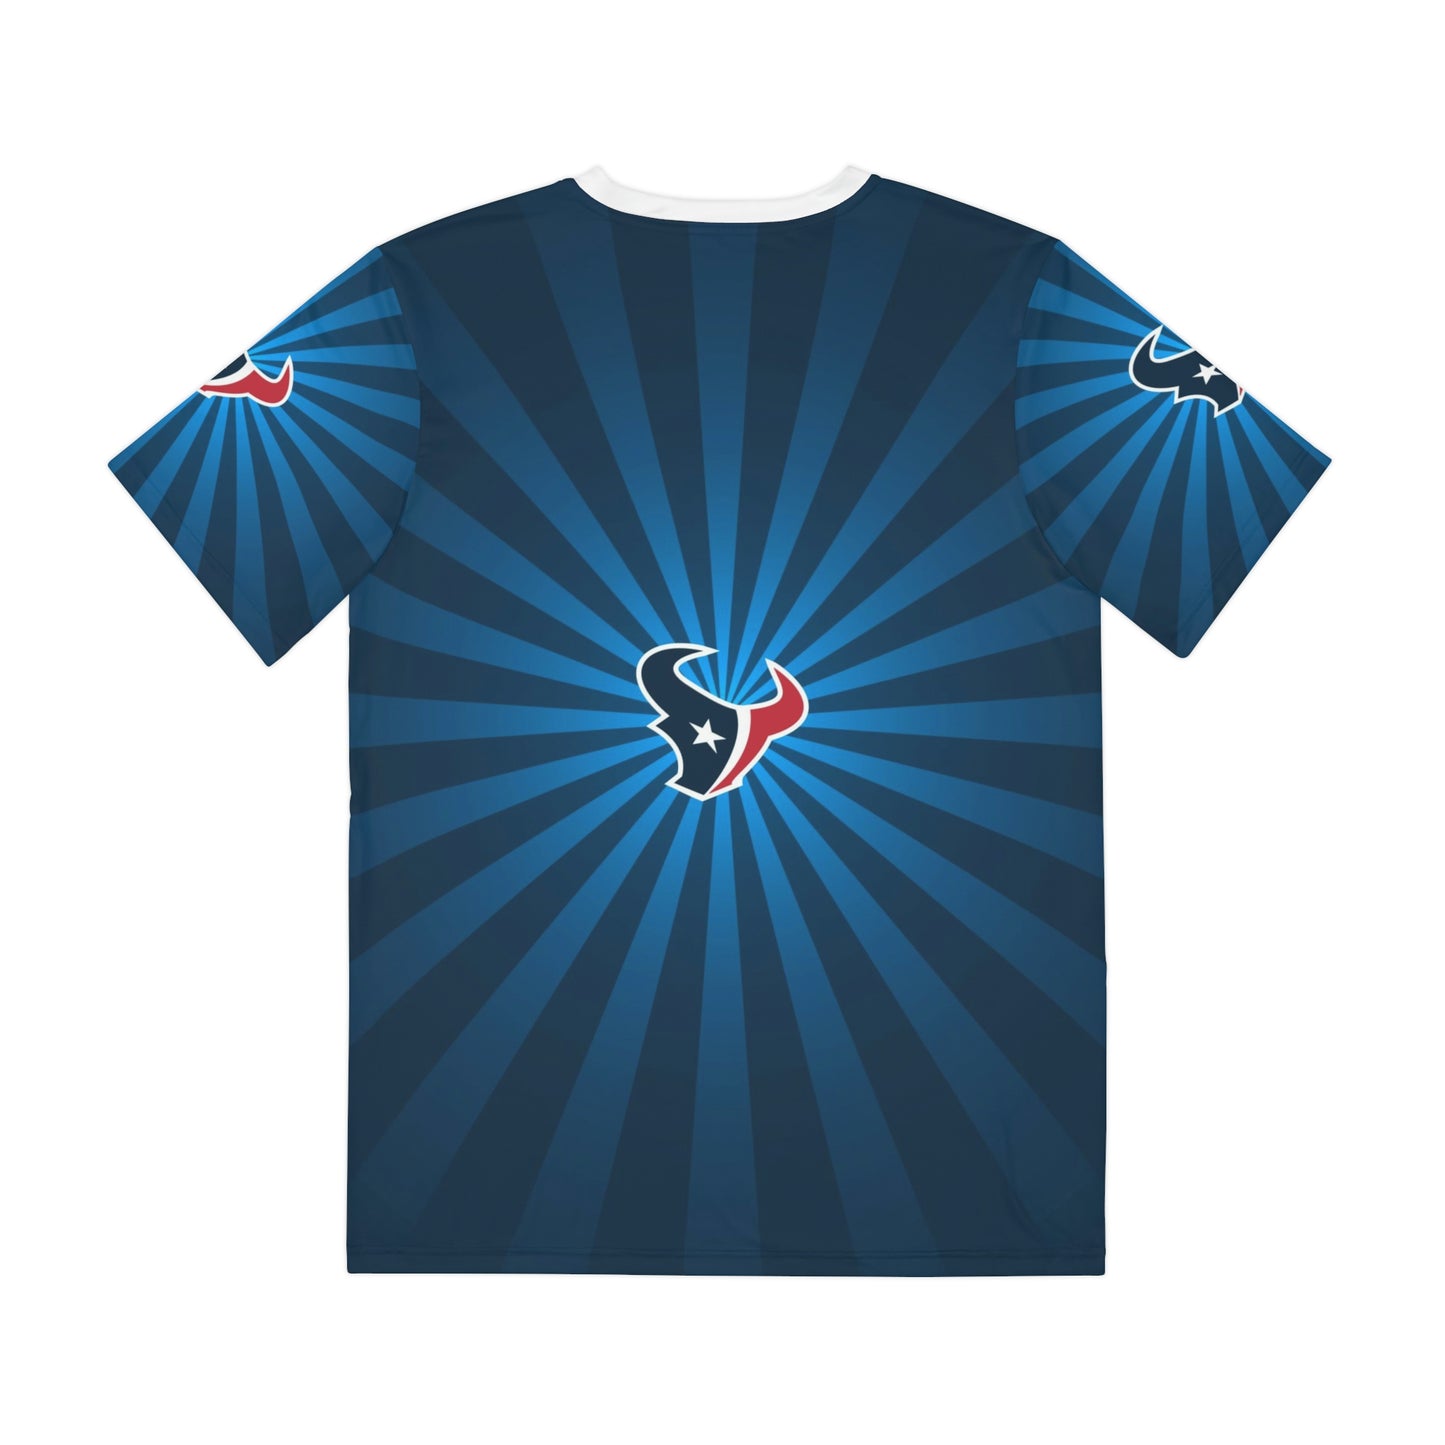 Geotrott NFL Houston Texans Men's Polyester All Over Print Tee T-Shirt